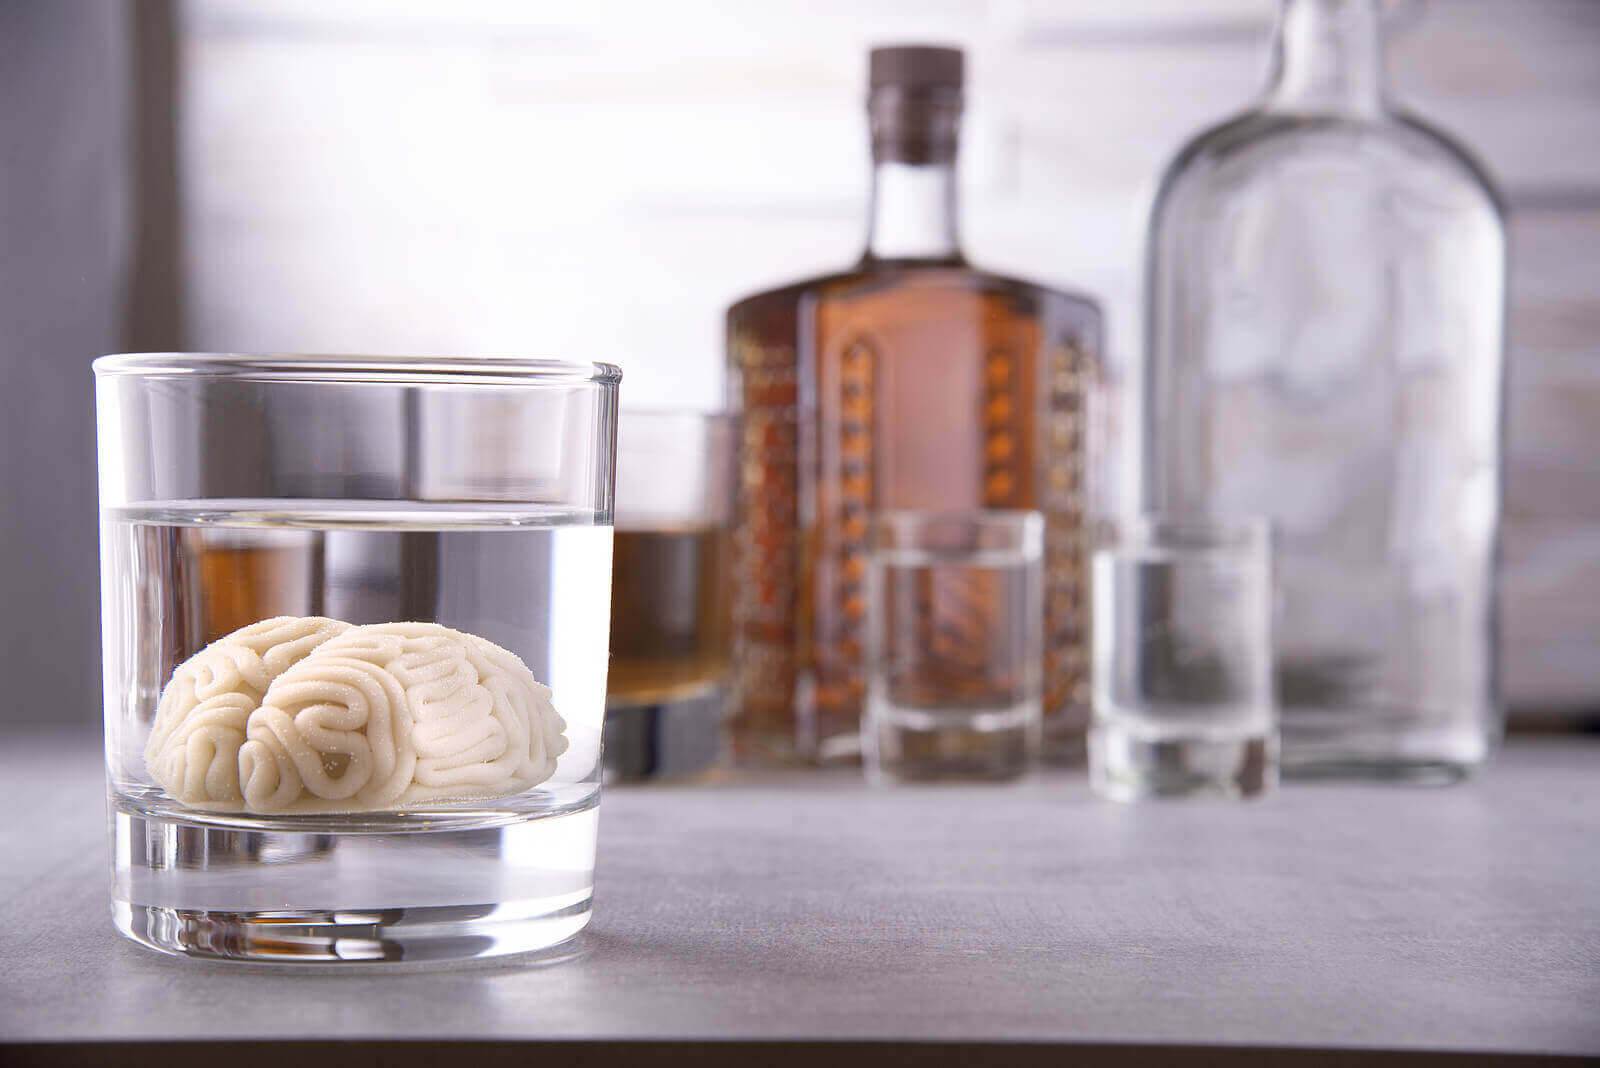 alkol şişeleri ve bir bardak alkole yatırılmış beyin